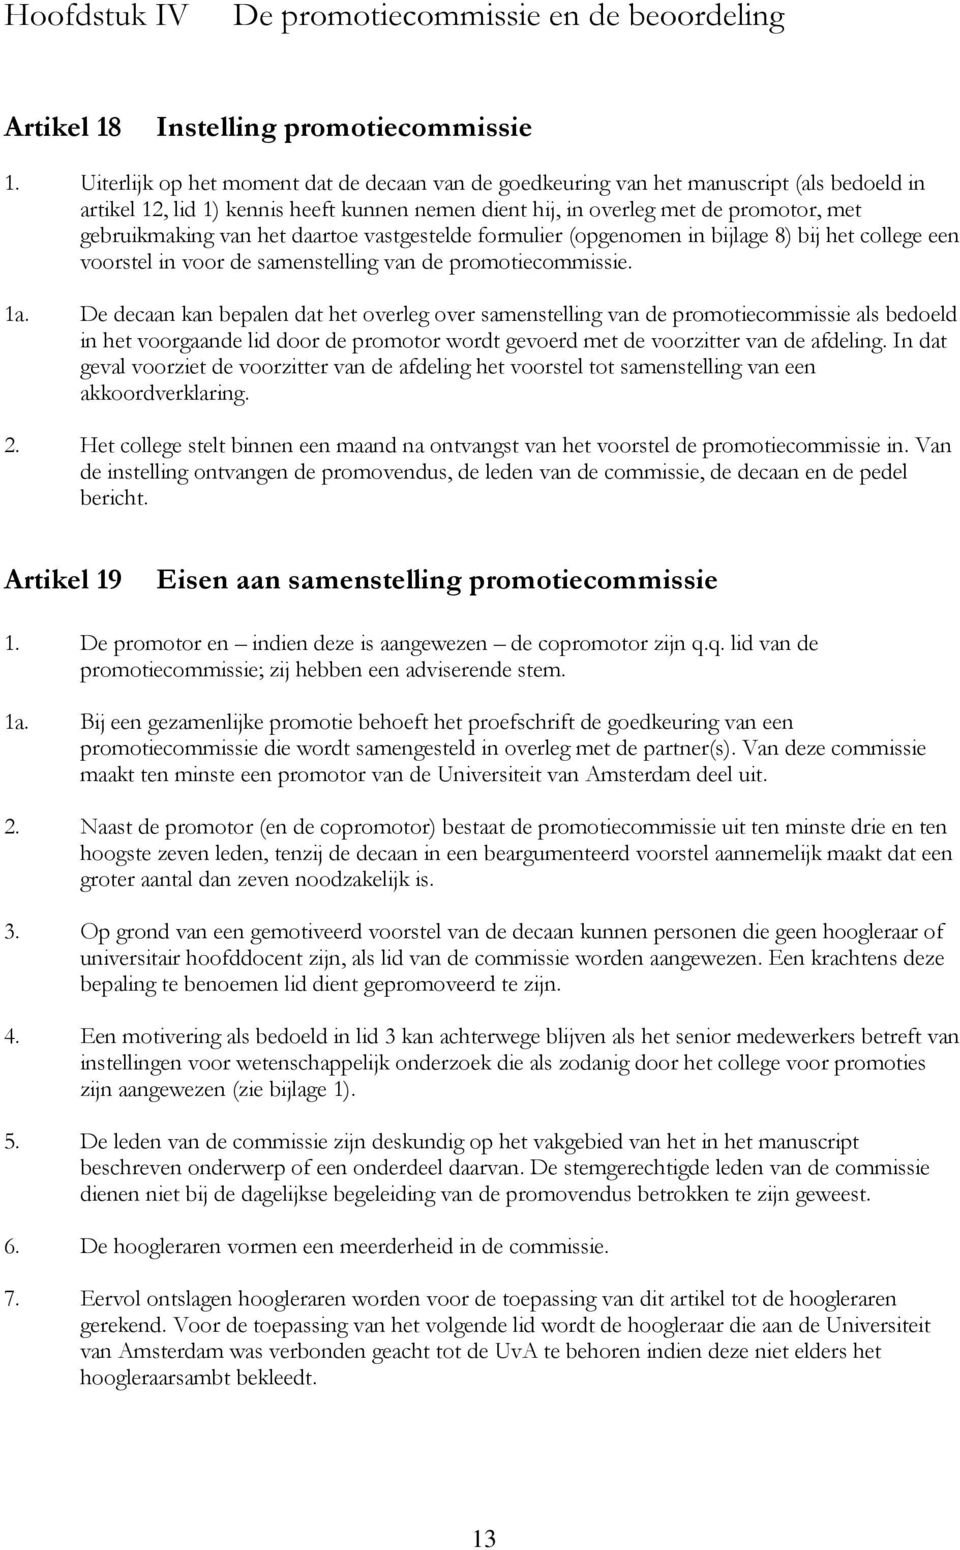 het daartoe vastgestelde formulier (opgenomen in bijlage 8) bij het college een voorstel in voor de samenstelling van de promotiecommissie. 1a.